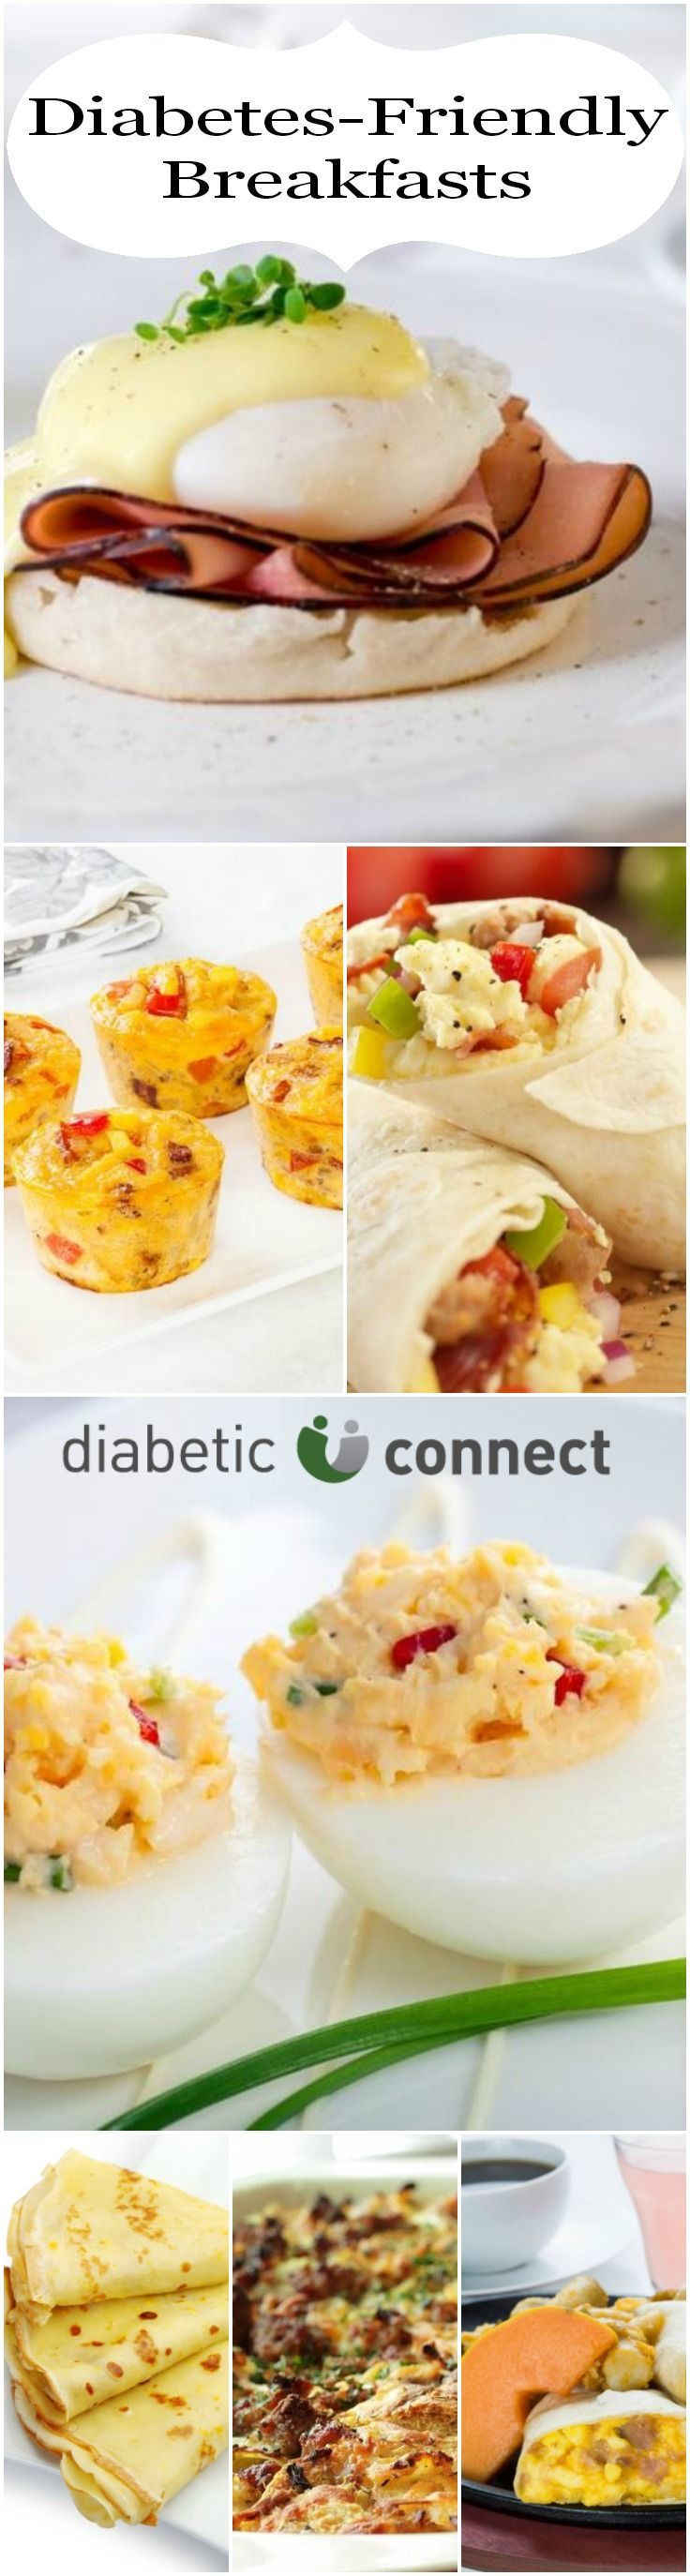 Diabetic Type 2 Recipes
 Diabetic breakfast ideas